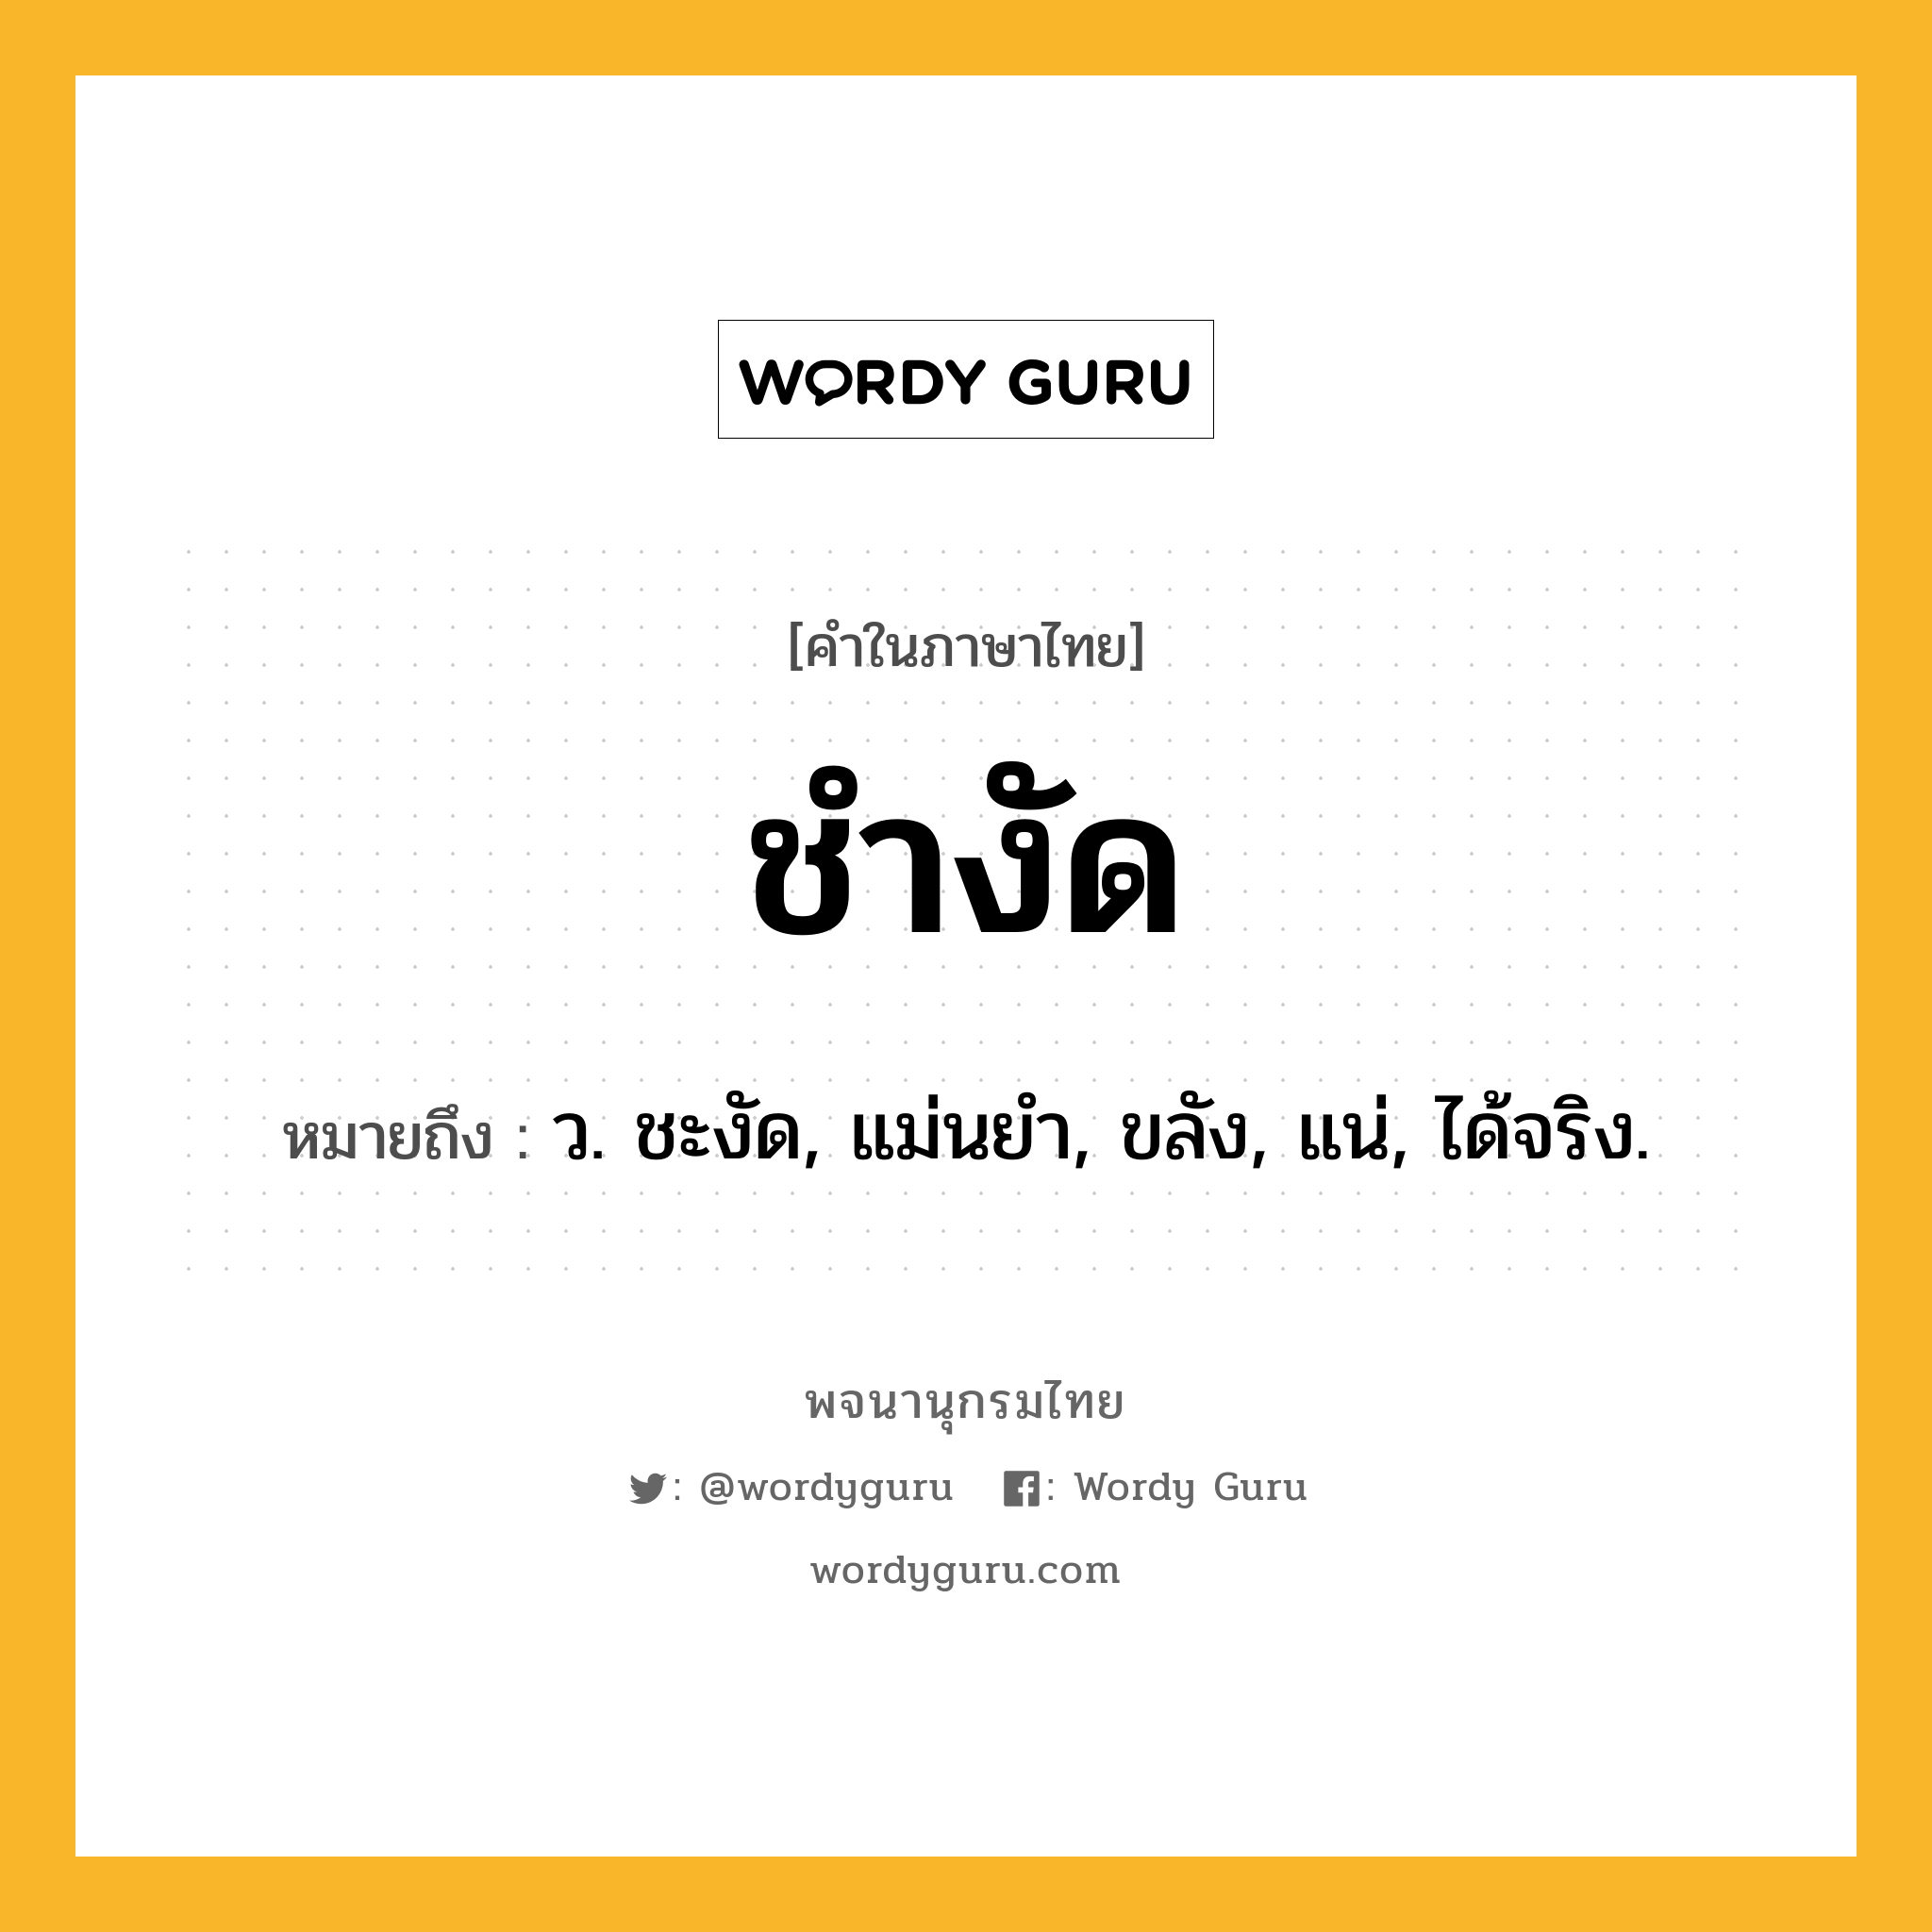 ชำงัด หมายถึงอะไร?, คำในภาษาไทย ชำงัด หมายถึง ว. ชะงัด, แม่นยํา, ขลัง, แน่, ได้จริง.